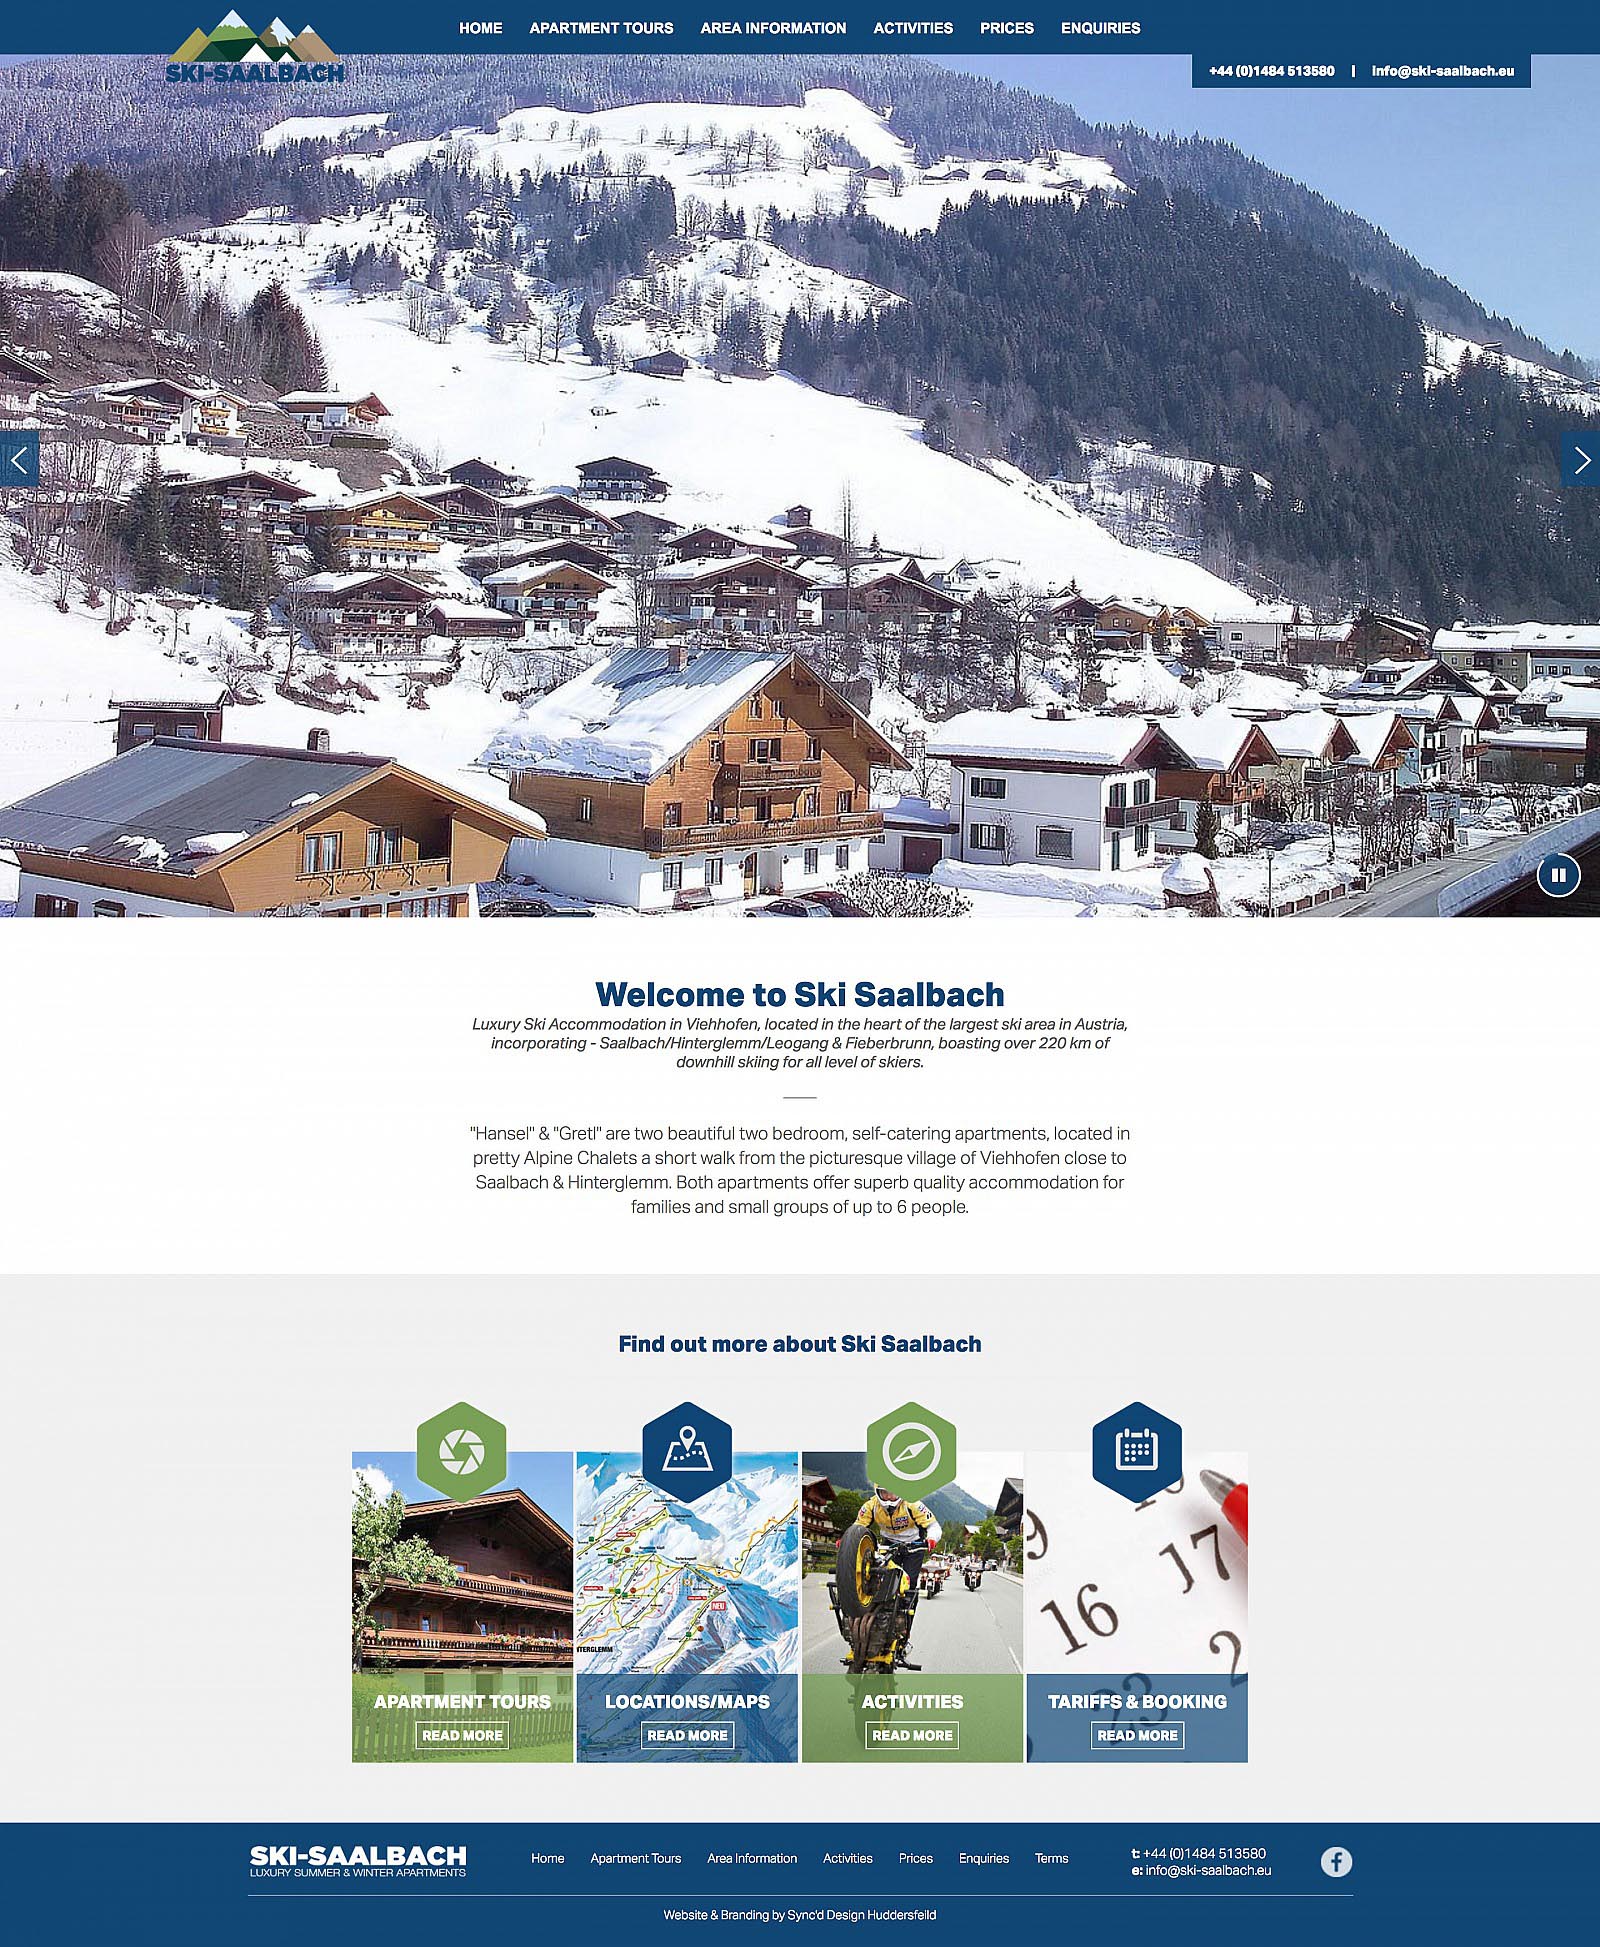 Ski Saalbach - Home Page